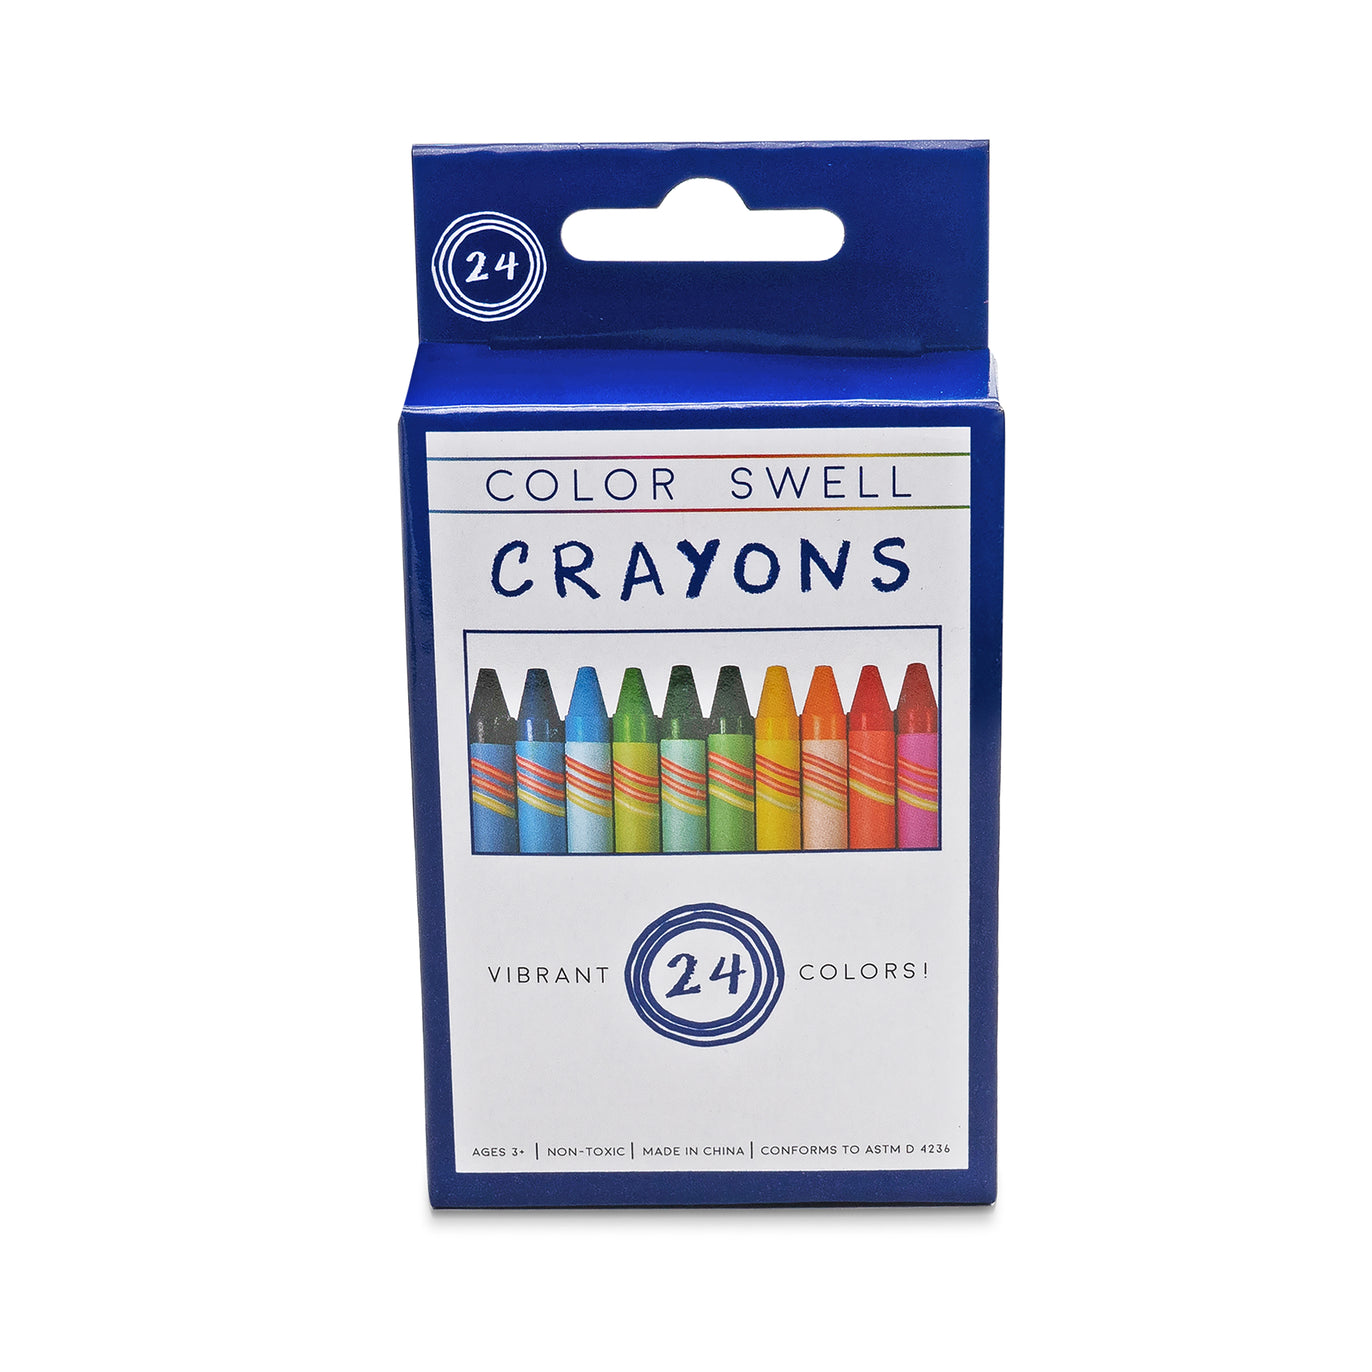 https://colorswell.com/cdn/shop/products/Crayons-box-2_x686@2x.jpg?v=1697223425